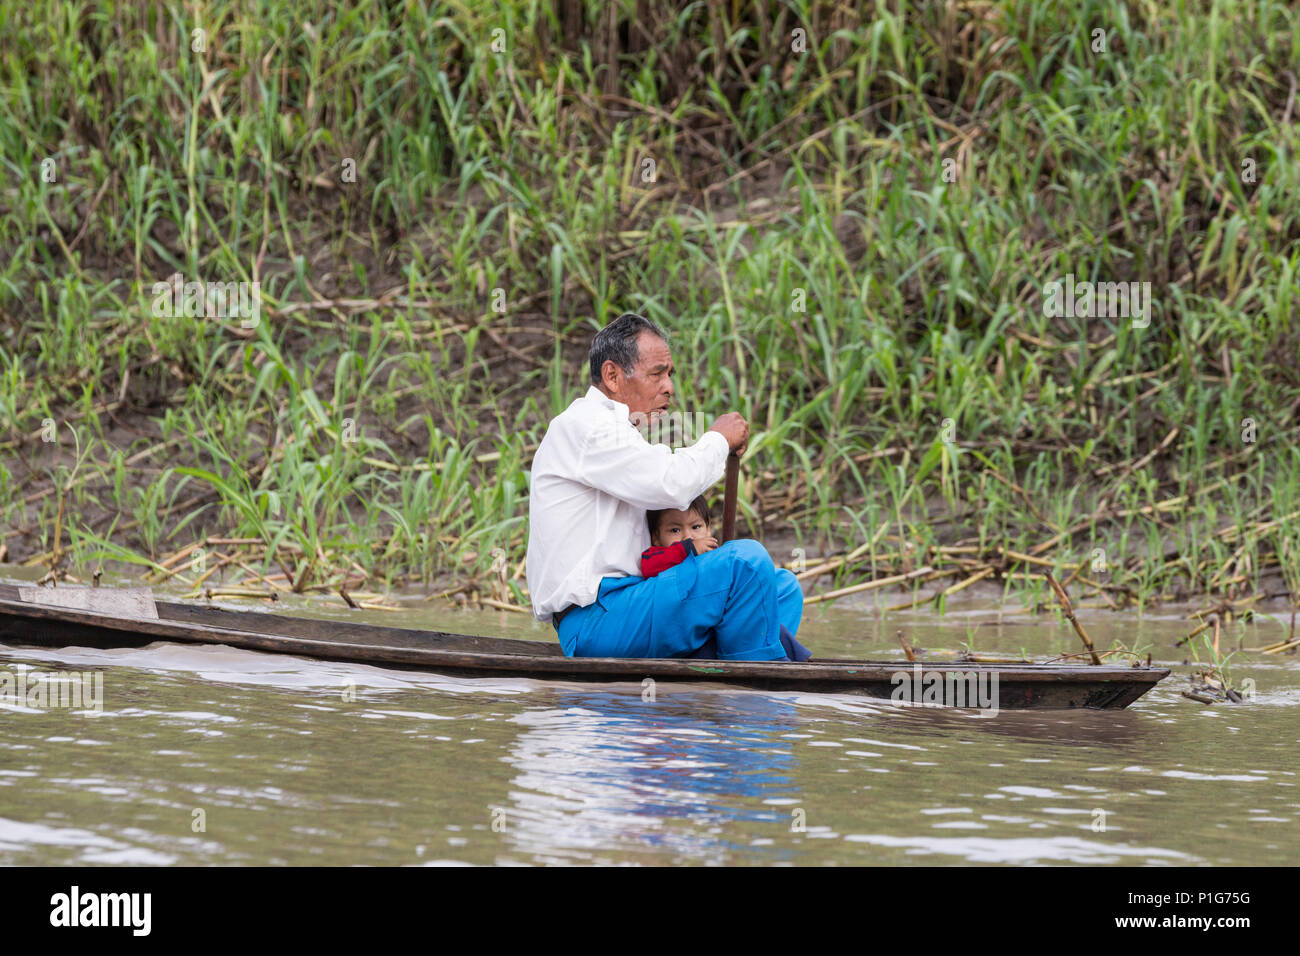 Man paddling pirogue, Puerto Miguel, le haut bassin du fleuve Amazone, Loreto, Pérou Banque D'Images